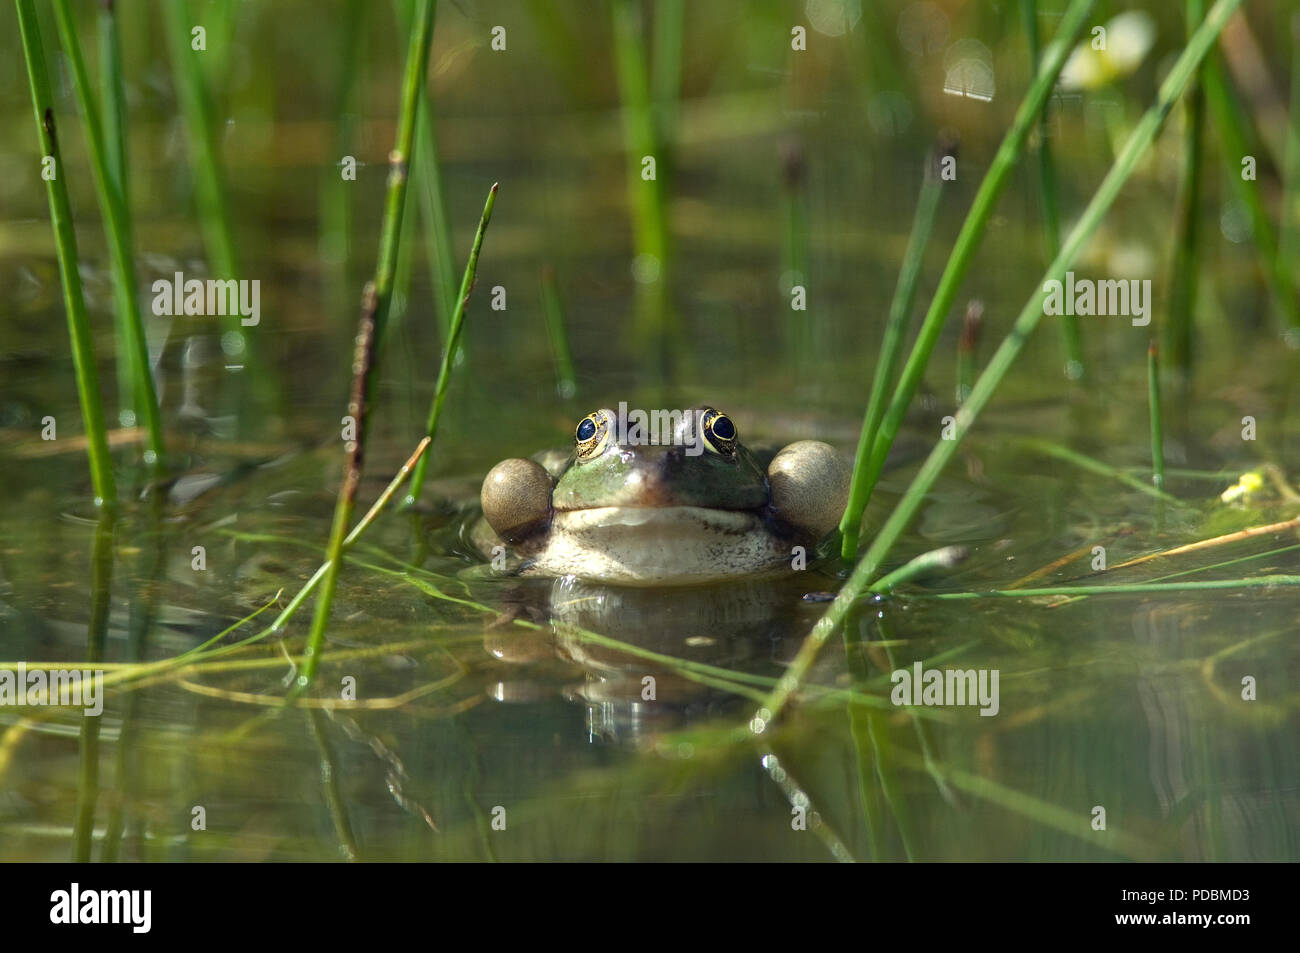 Grenouille rieuse - Sacs vocaux gonflés - Marsh Frog - Vocal sacs inflated - Rana ridibunda Stock Photo